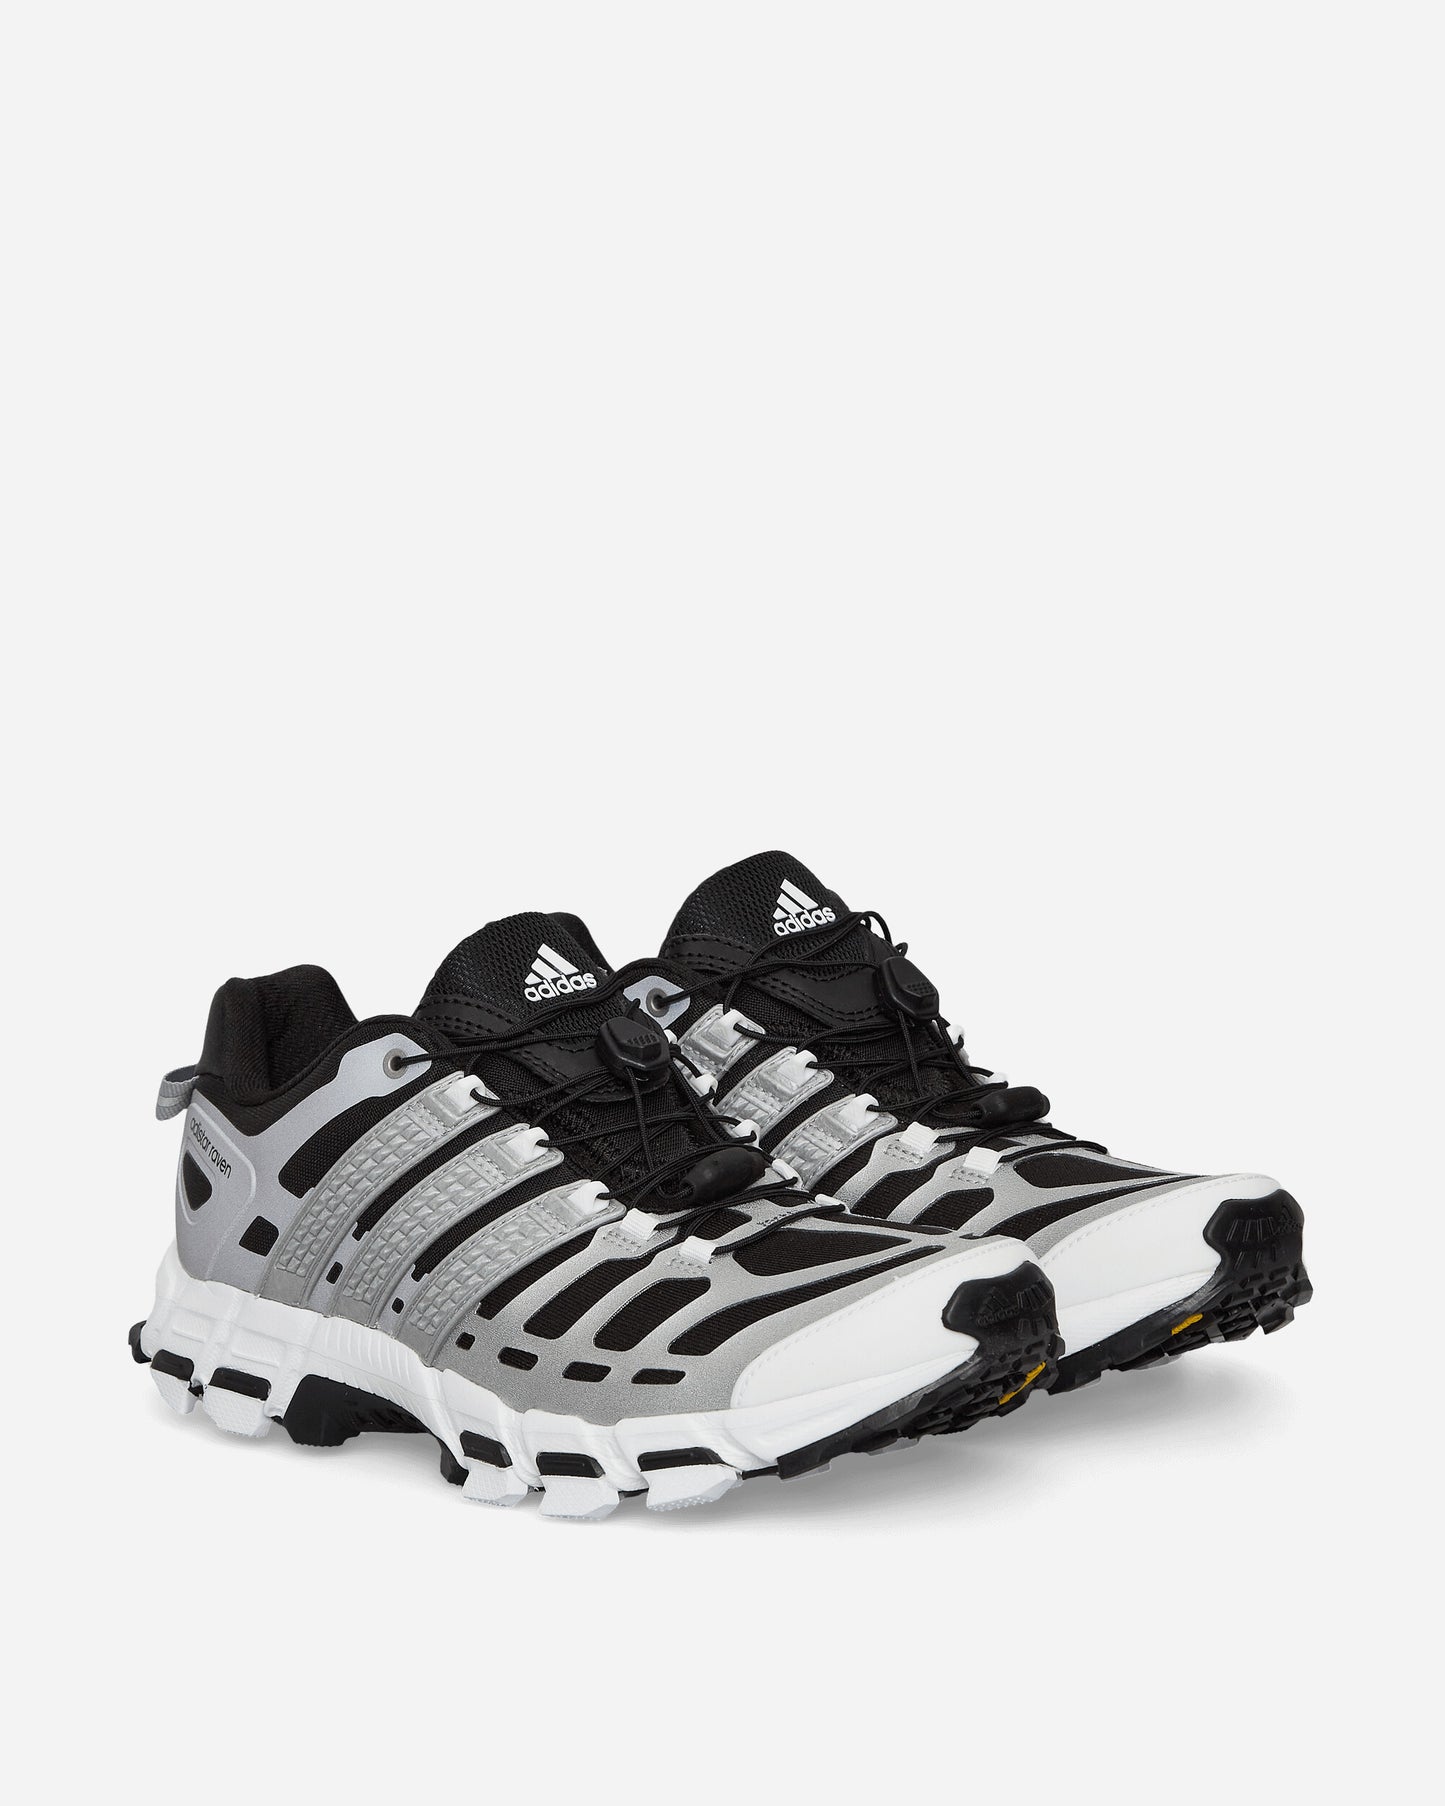 adidas Adistar Raven Core Black/Silver Met Sneakers Low ID1039 001